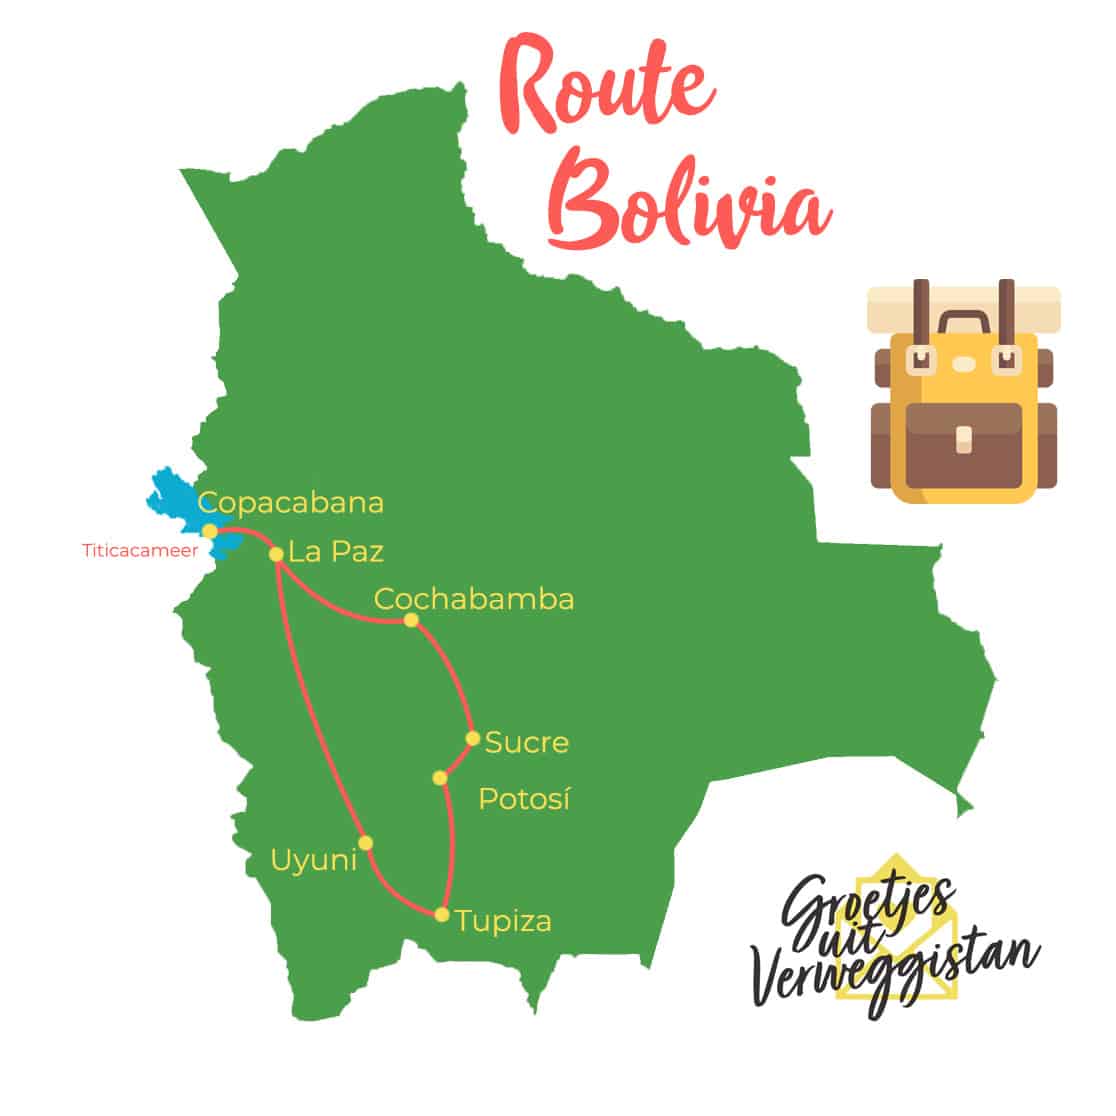 Kaartje met een reisroute door Bolivia erop getekend geadviseerd door Groetjes uit Verweggistan